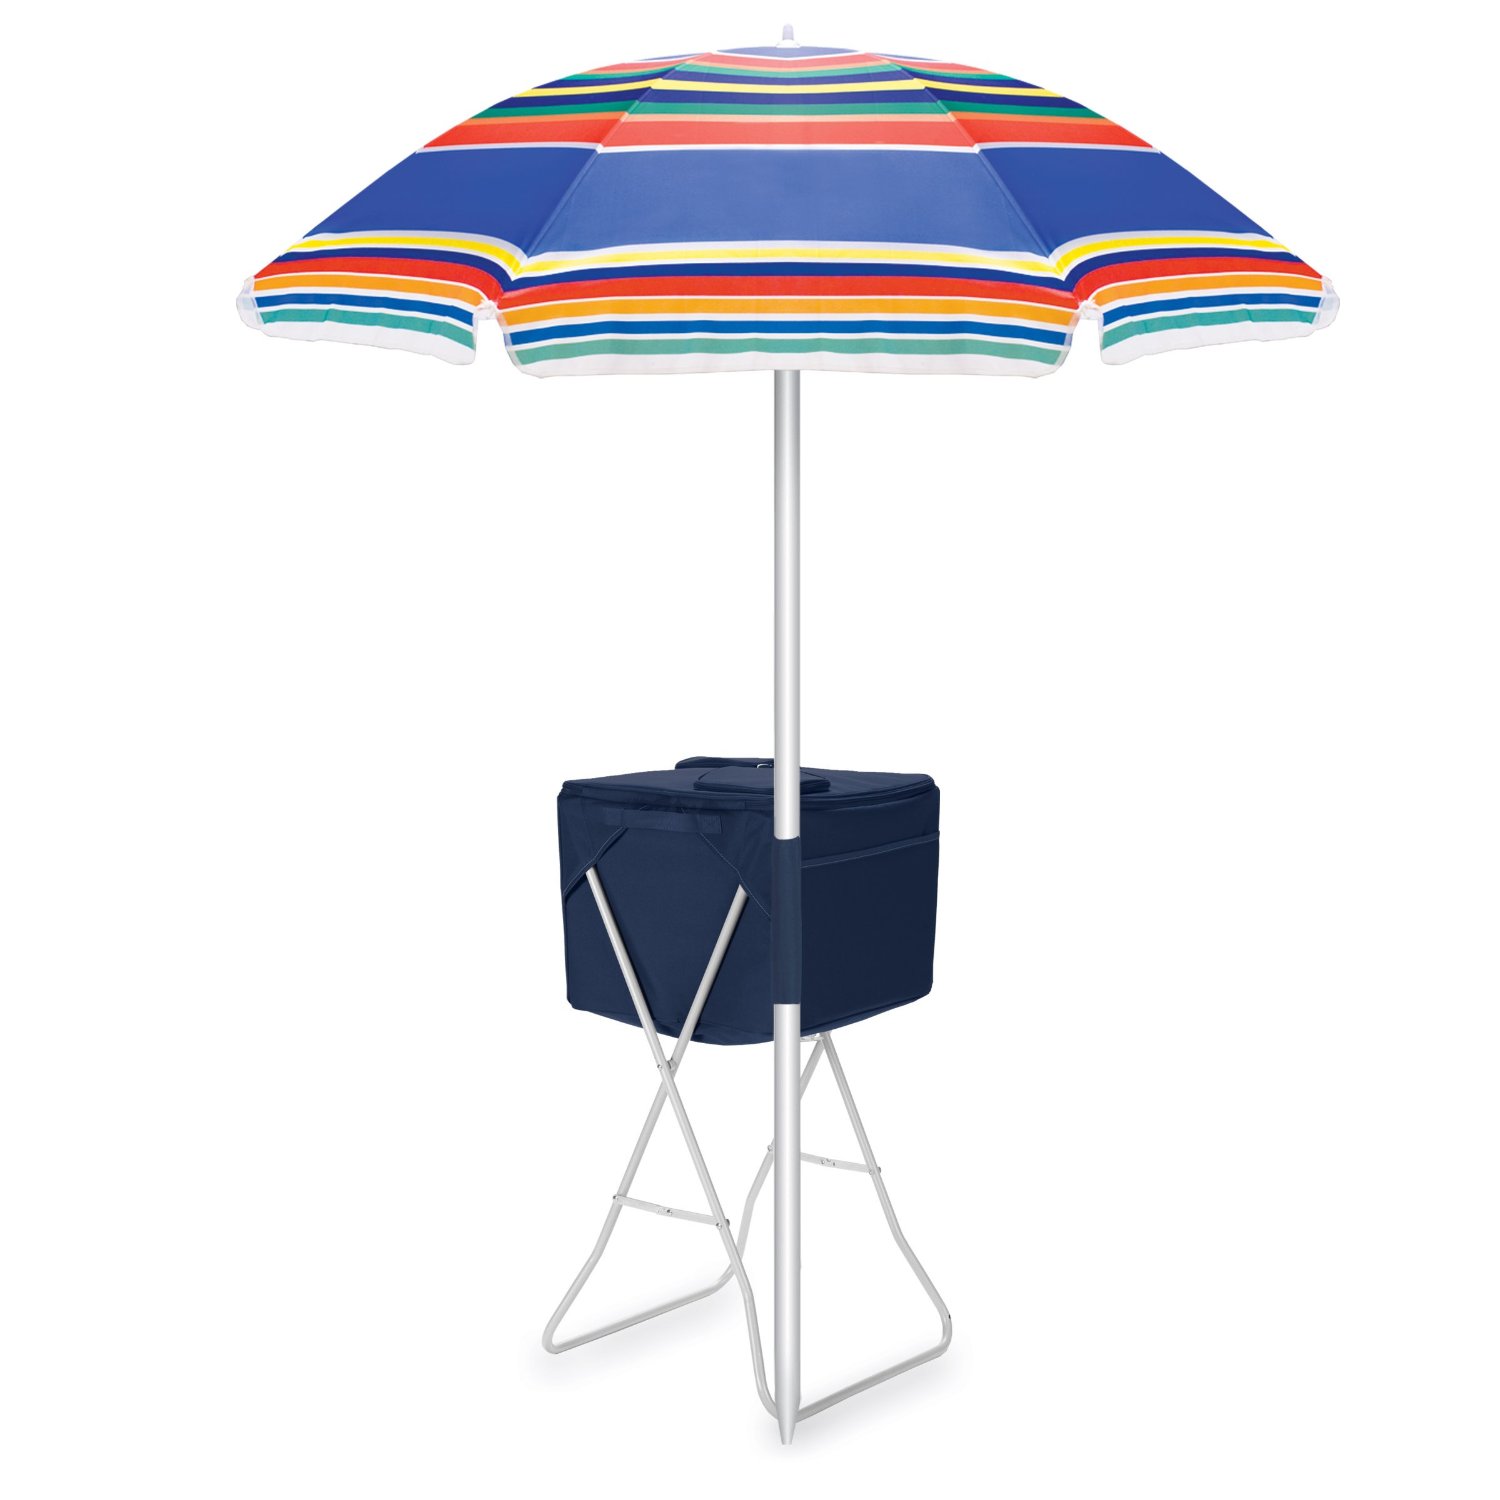 Picnic Time Outdoor Umbrella